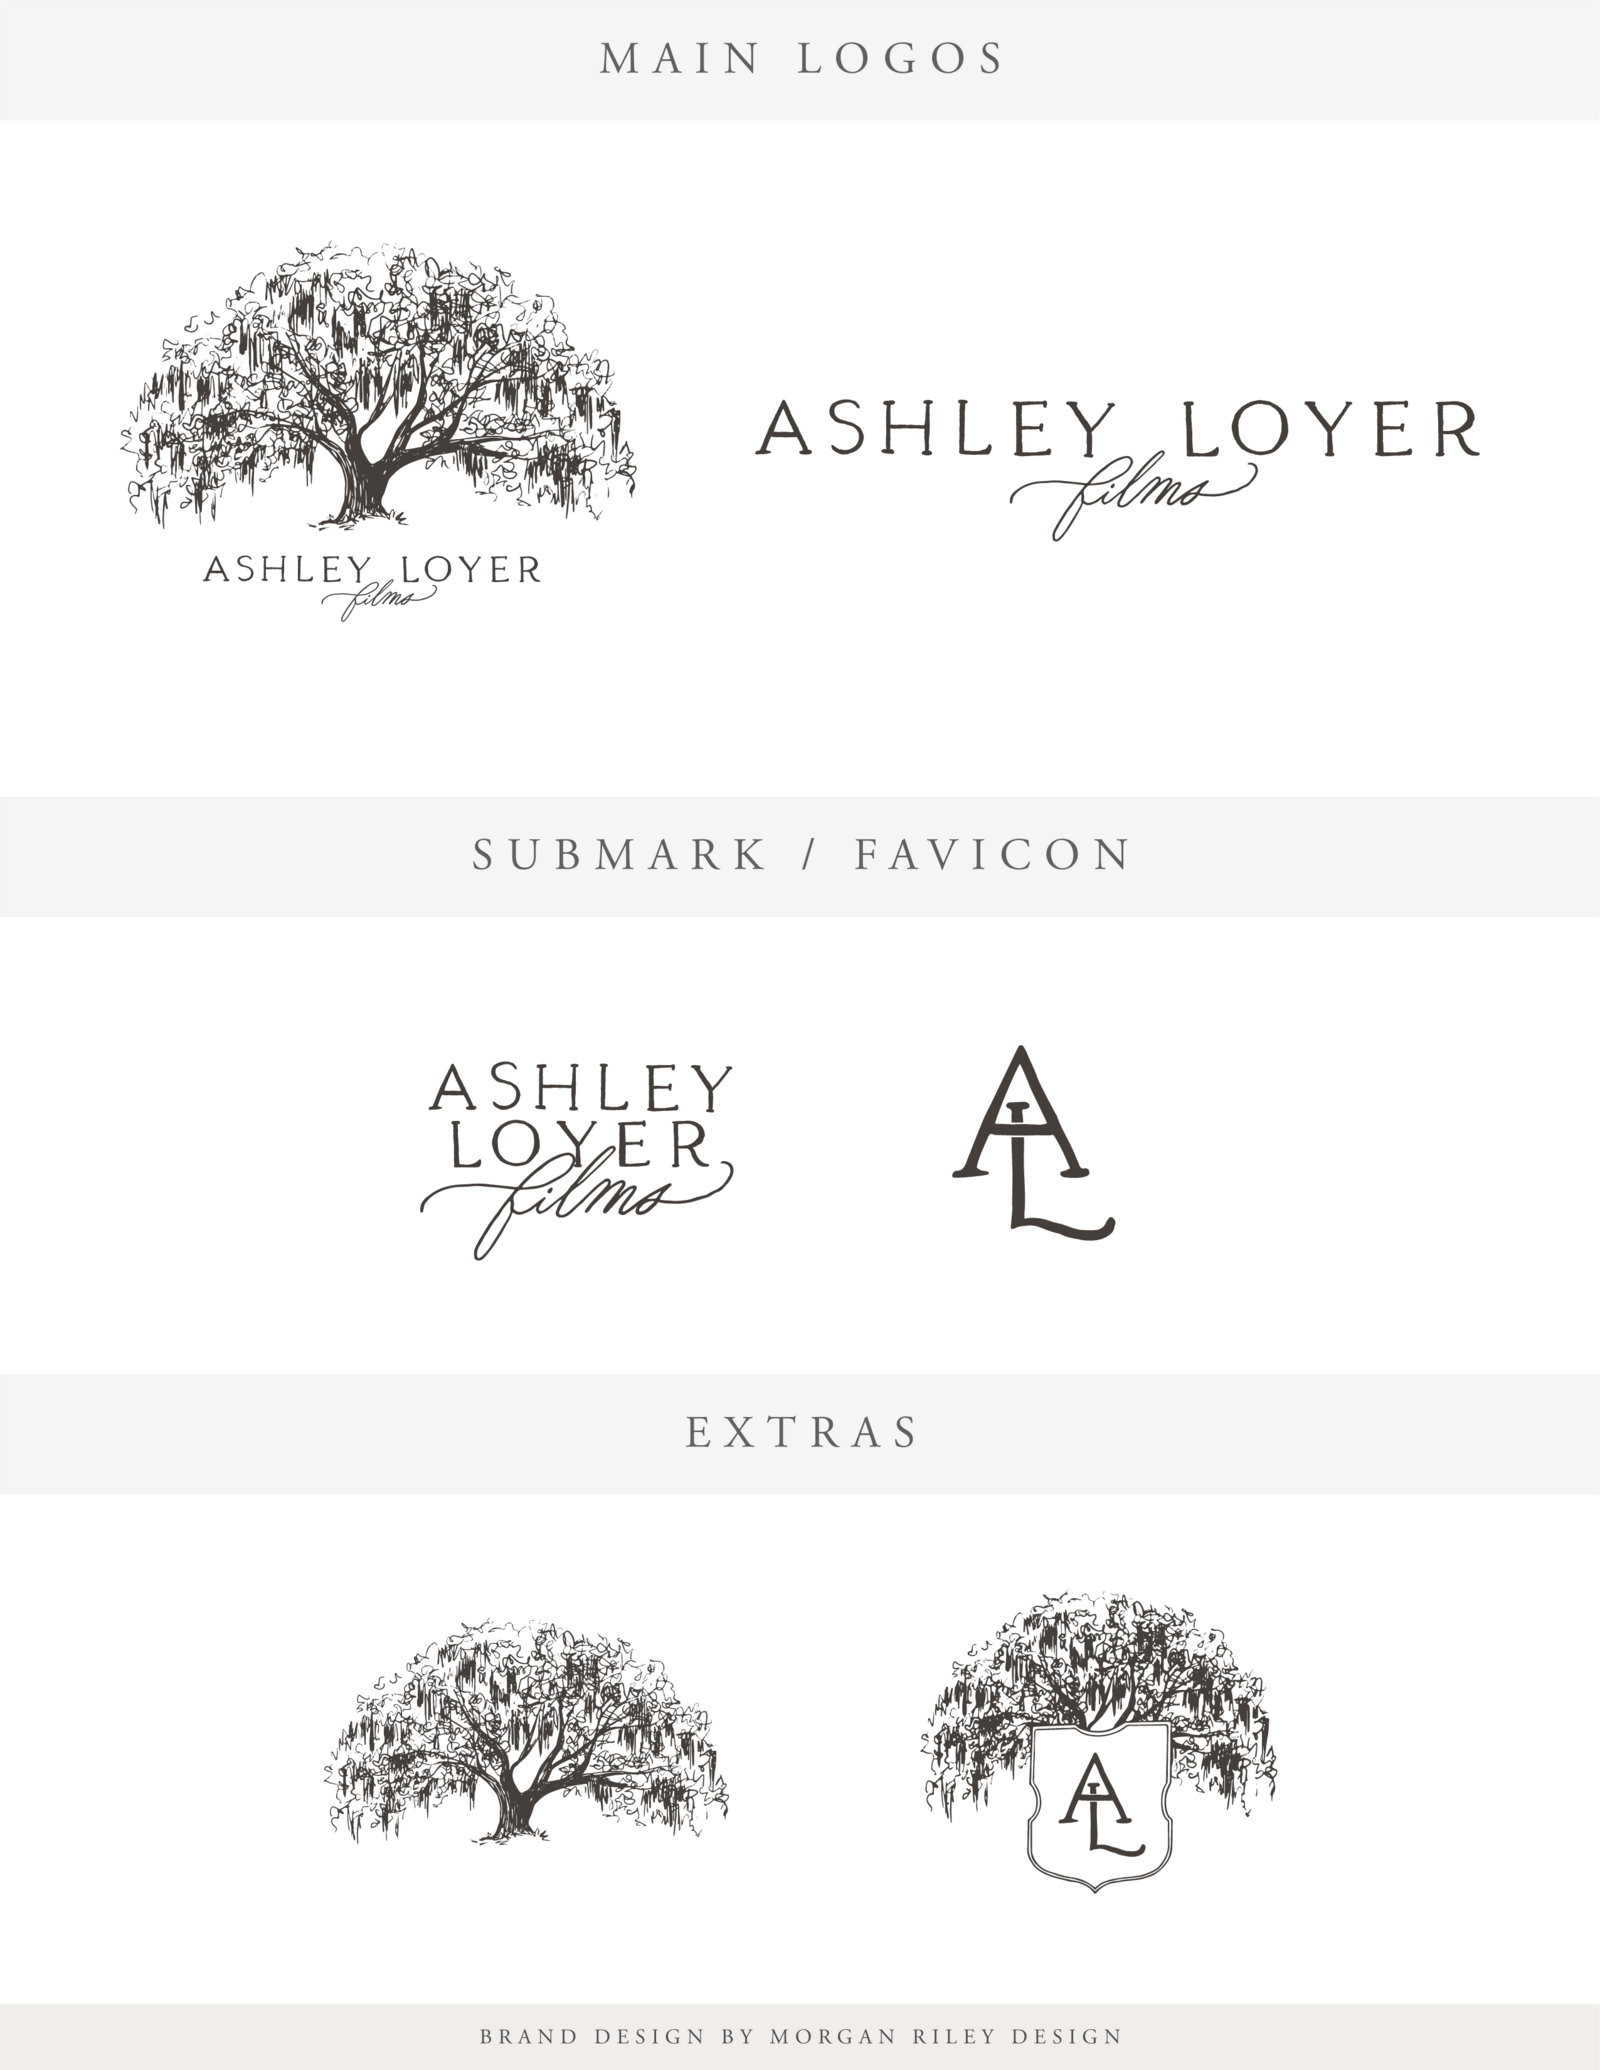 Ashley Loyer Design Board